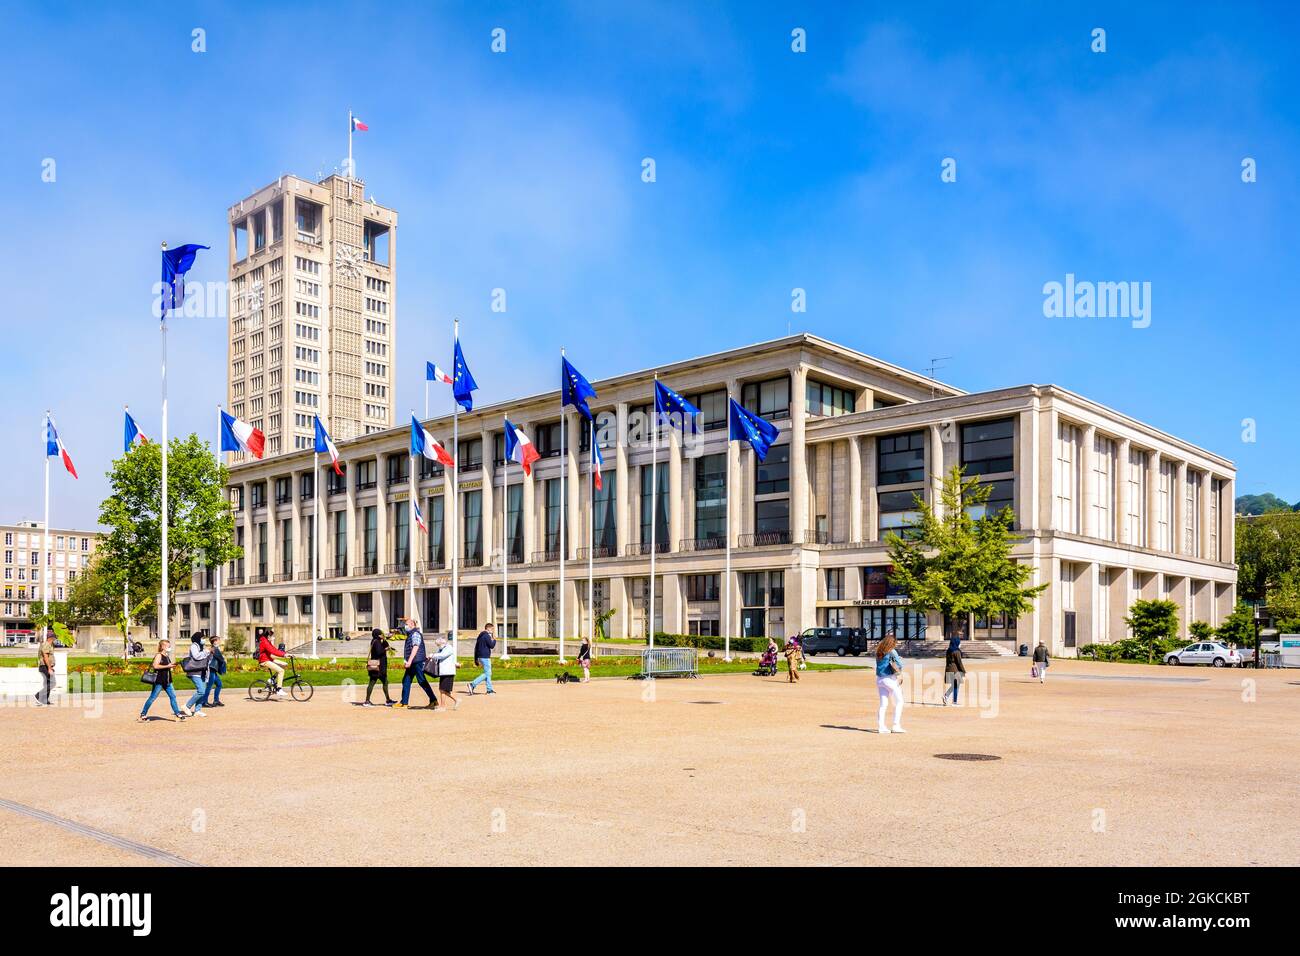 Fassade und Turm des Rathauses von Le Havre, Frankreich. Stockfoto